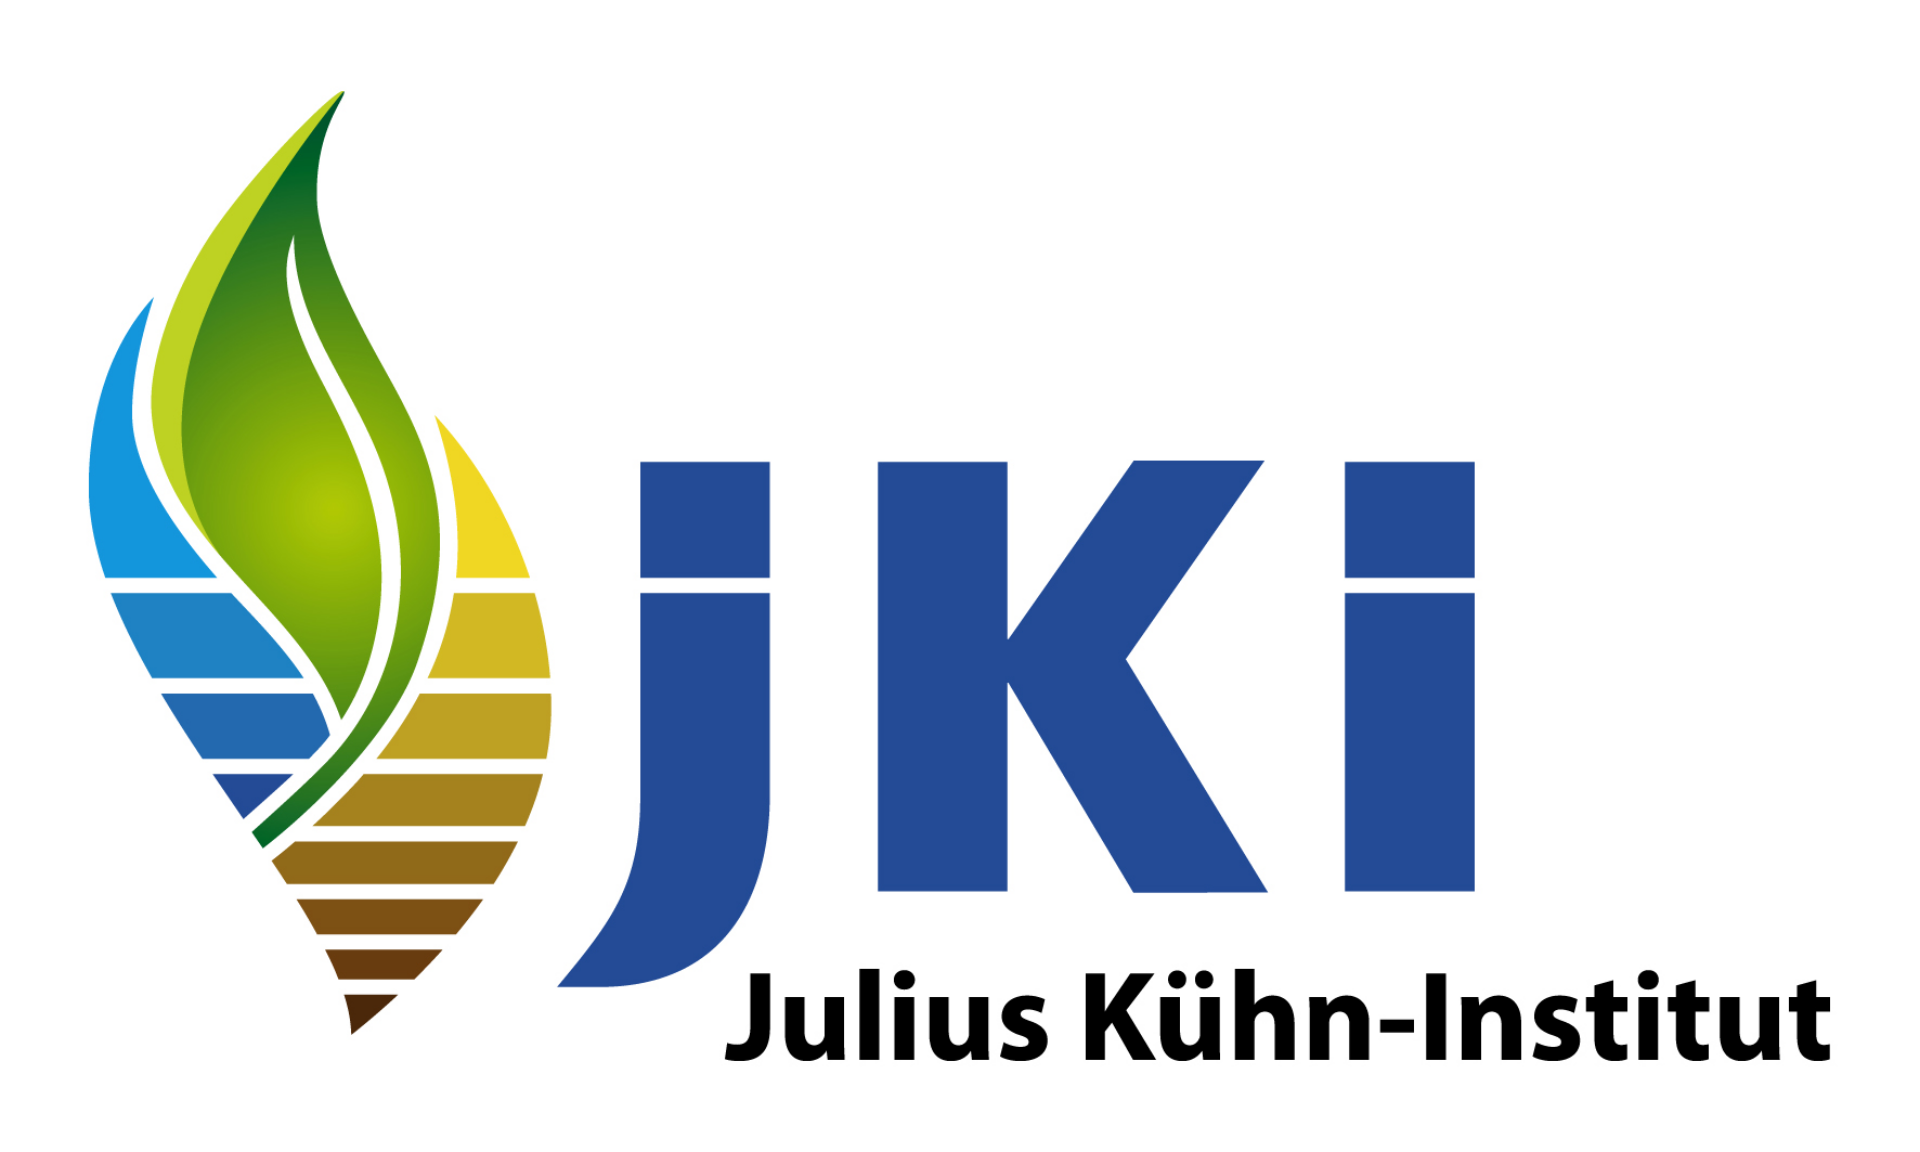 Julius Kühn-Institut (JKI), Bundesforschungsinstitut für Kulturpflanzen (Germany)